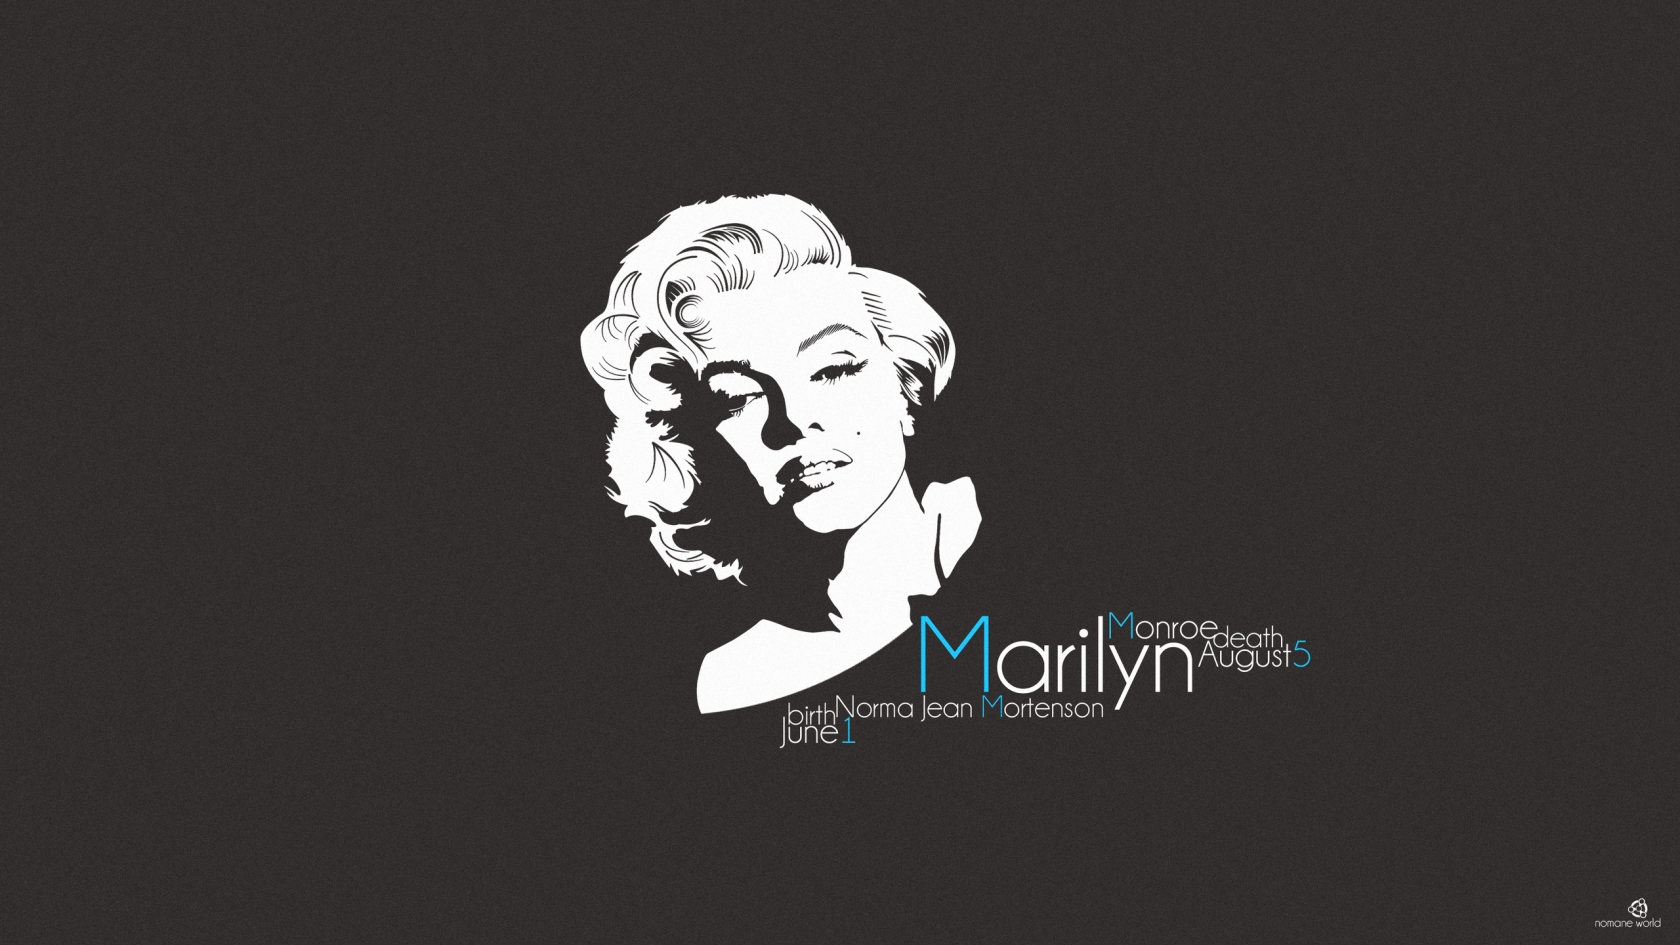 Marilyn Monroe for 1680 x 945 HDTV resolution